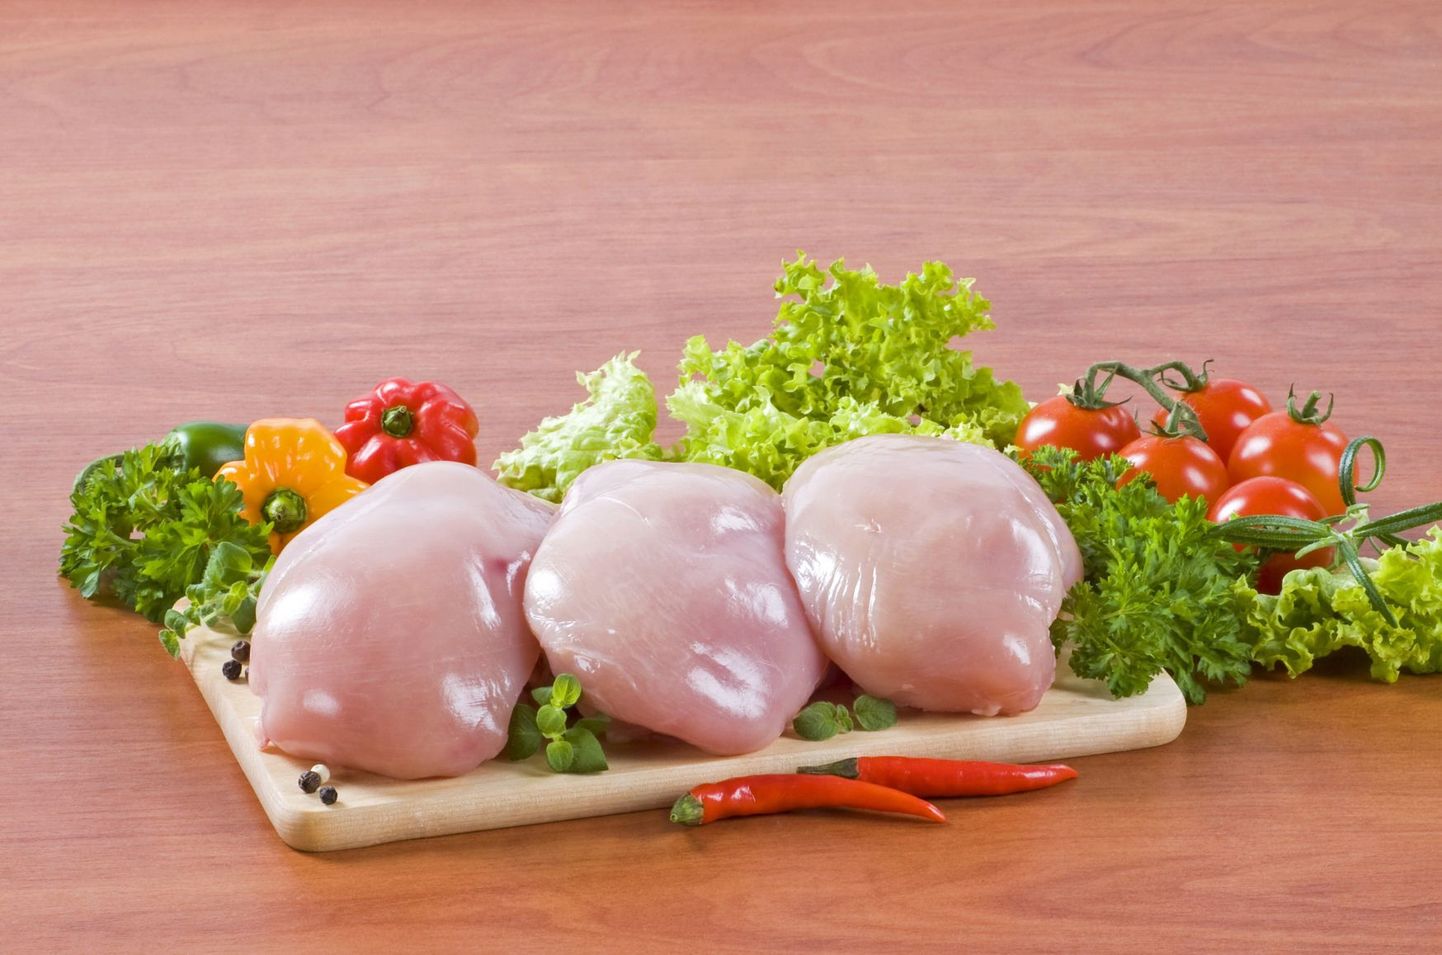 Toidumürgistuse vältimiseks tuleks kana enne söömist korralikult läbi küpsetada.